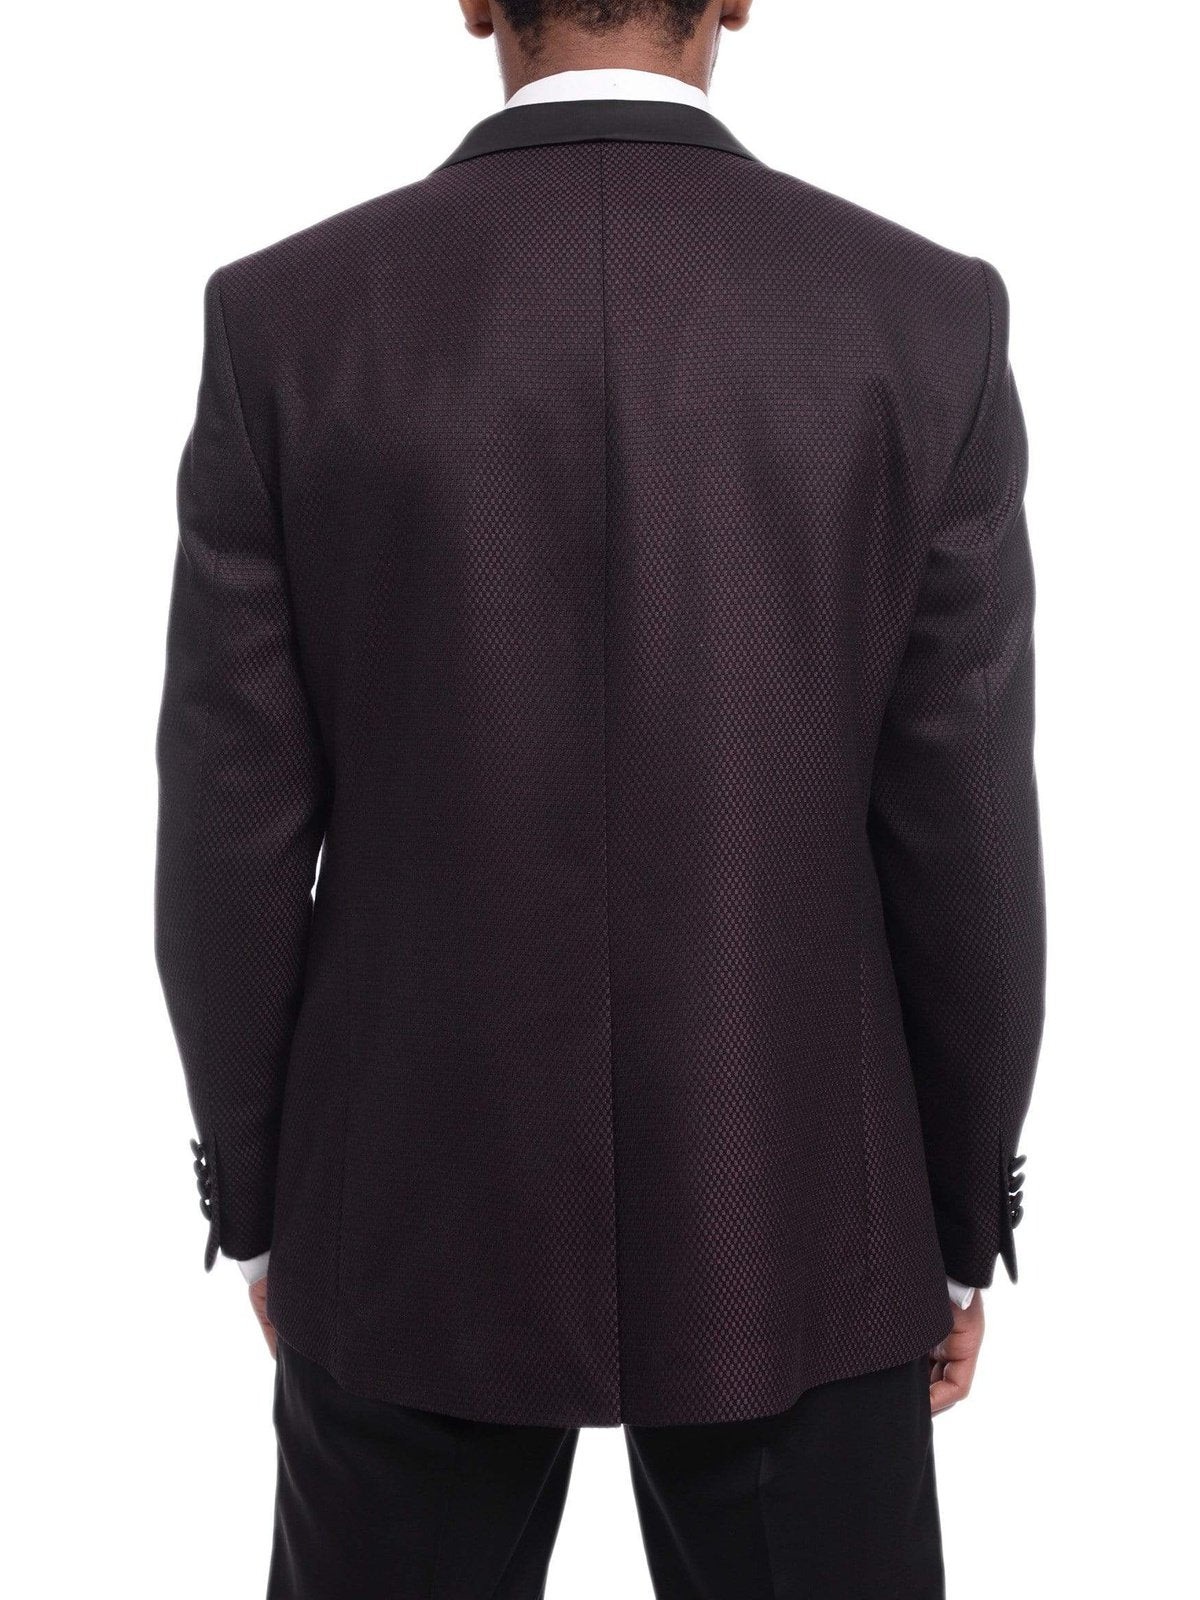 Emilio Guseppe TUXEDOS Emilio Gueseppe Slim Fit Burgundy &amp; Black Check Tuxedo Suit With Shawl Lapels